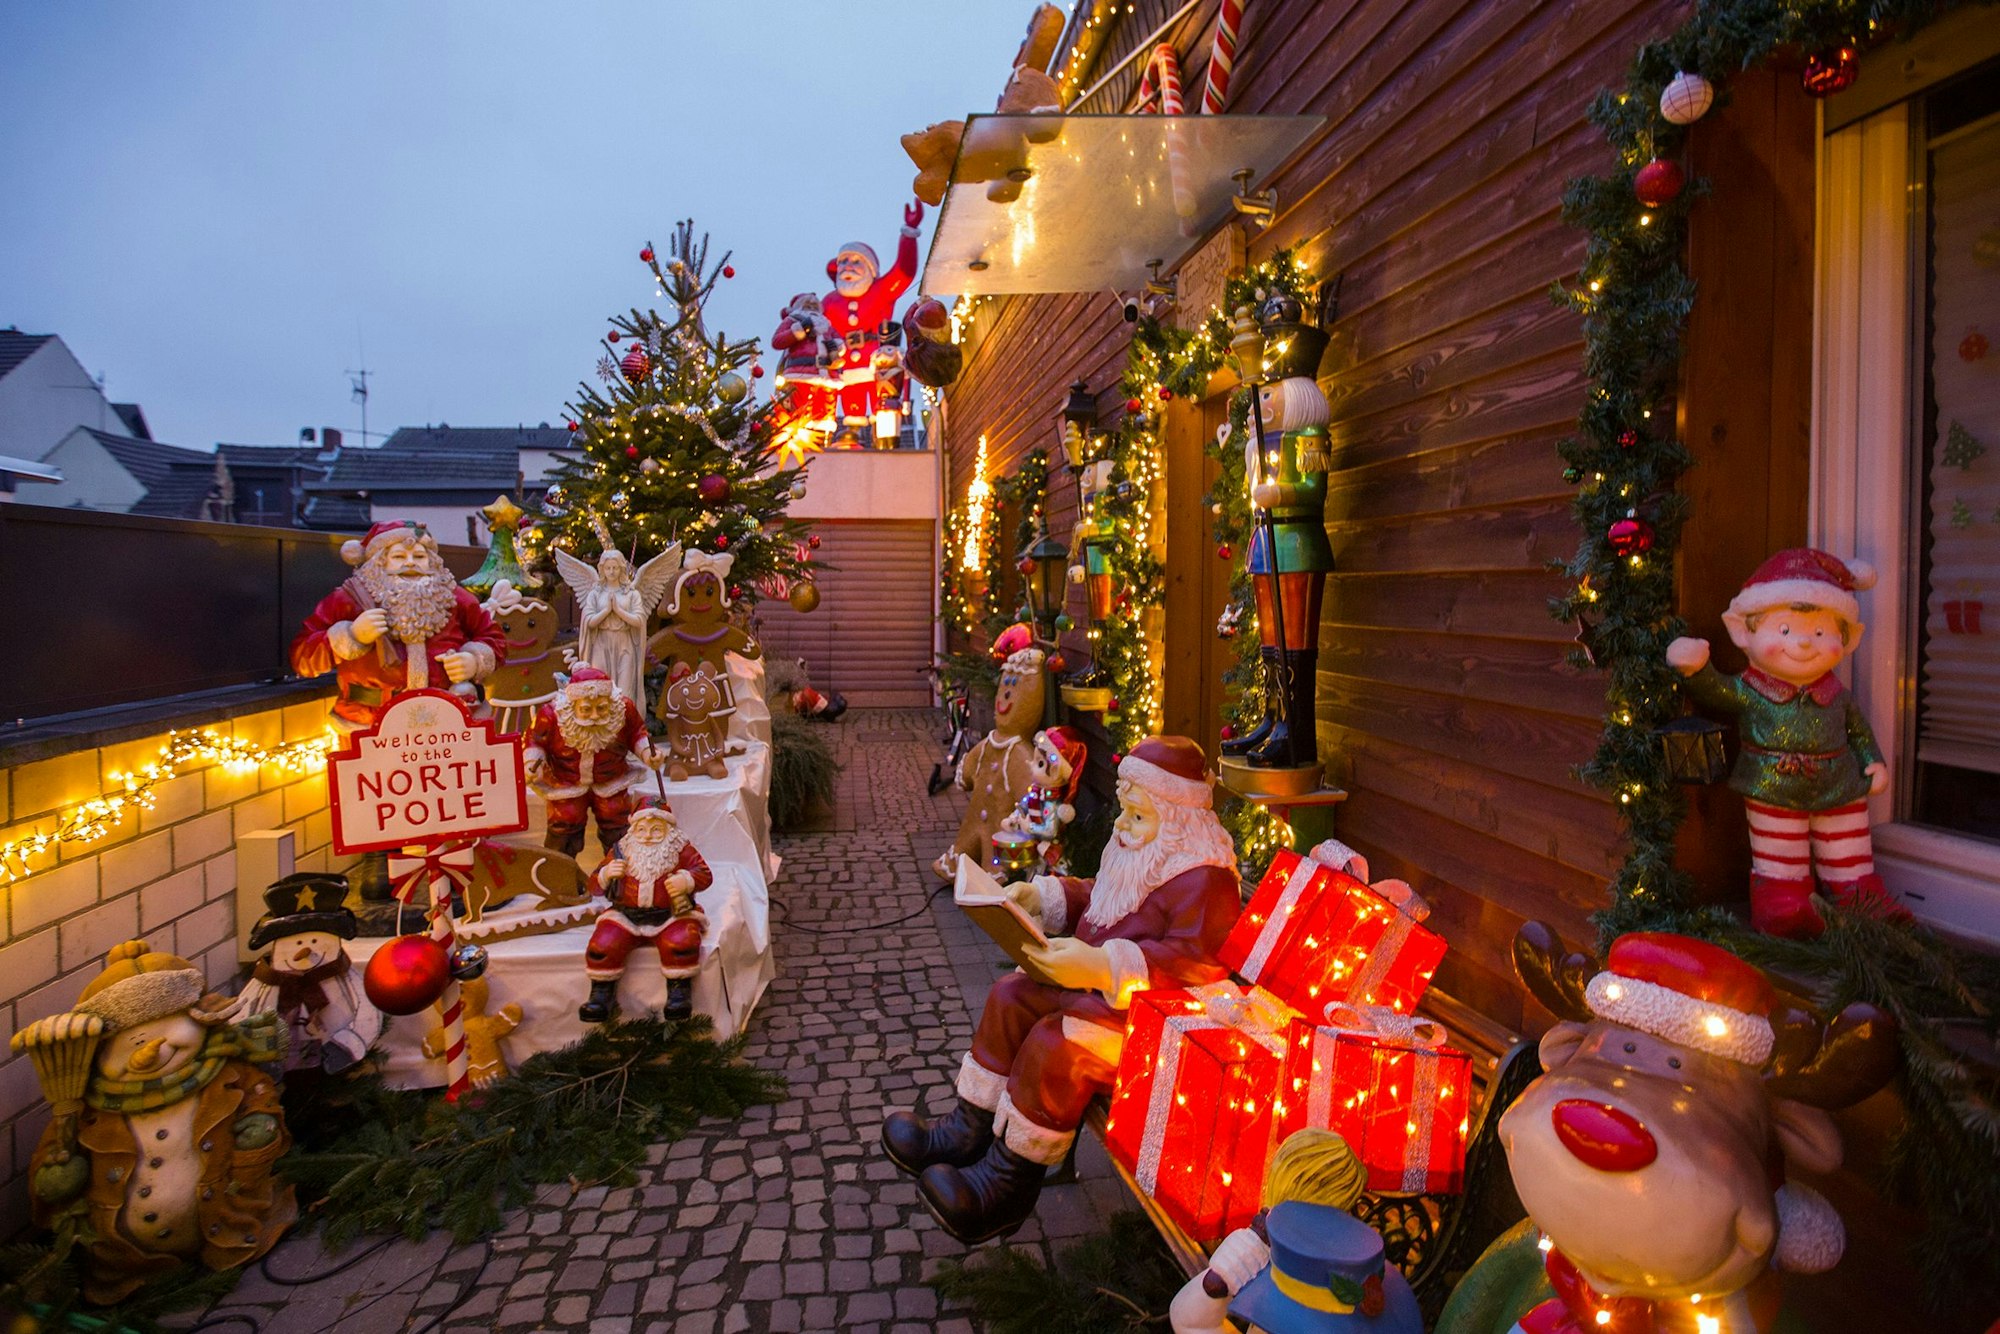 Beleuchtetes Weihnachtshaus von Familie Fischer in Köln-Worringen. Vor dem Haus stehen zahlreiche Weihnachtsfiguren darunter ein Weihnachtsmann, ein Rentier und Nussknacker.